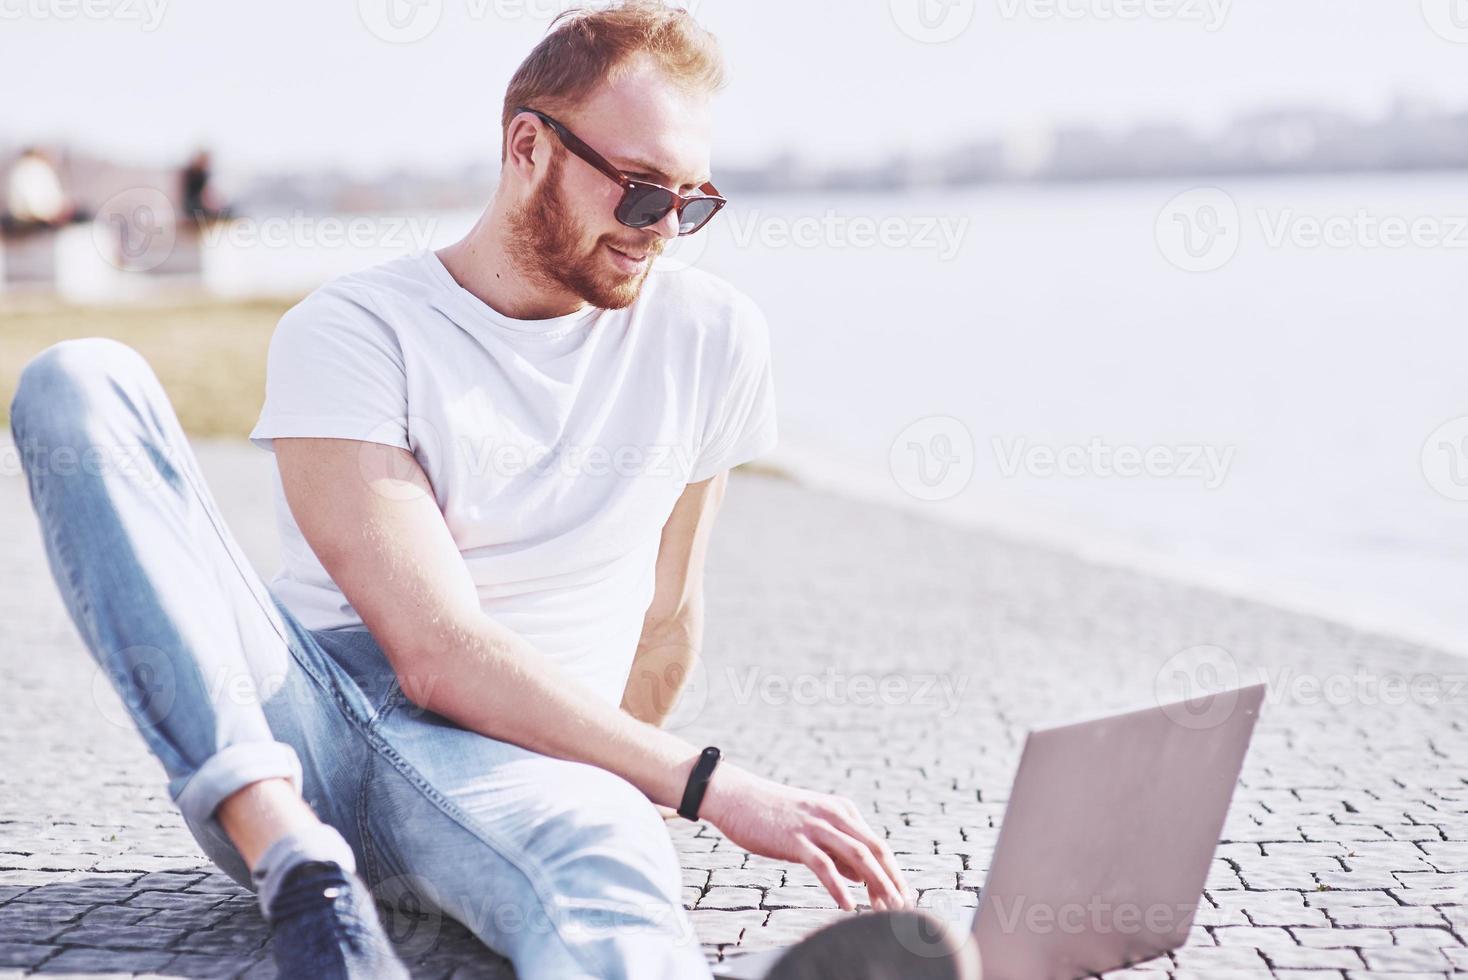 jovem sentado com o laptop fora do escritório. aluno aprendendo online. dia ensolarado de verão foto